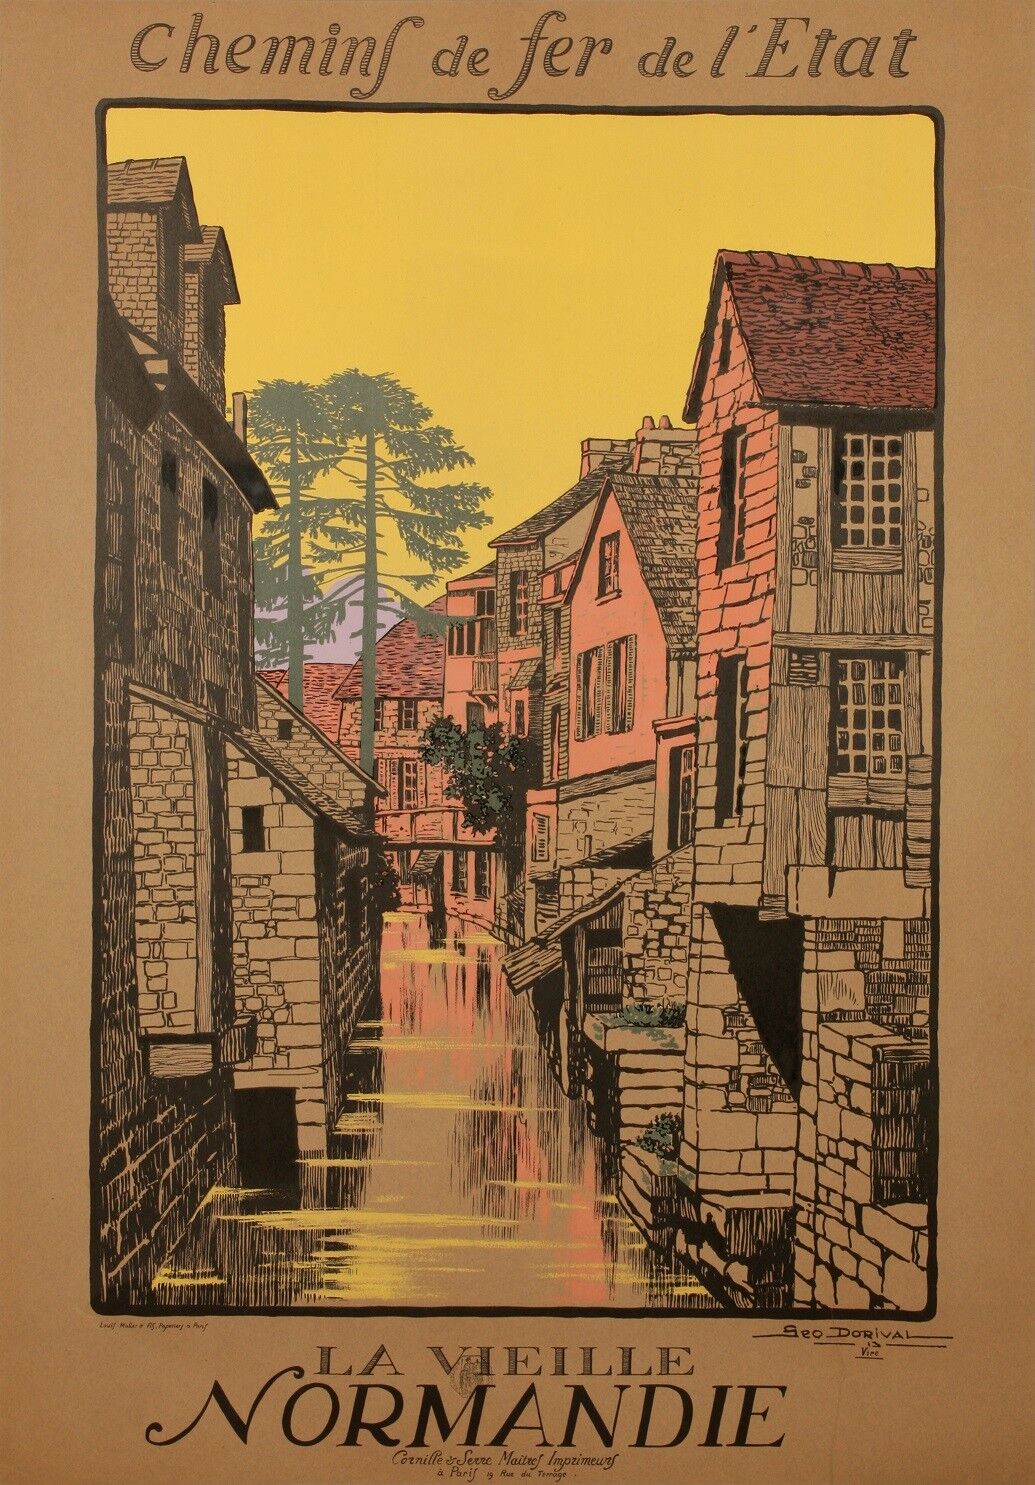 Original Tourism Poster - Geo Dorival - Vire Normandie Calvados - 1913